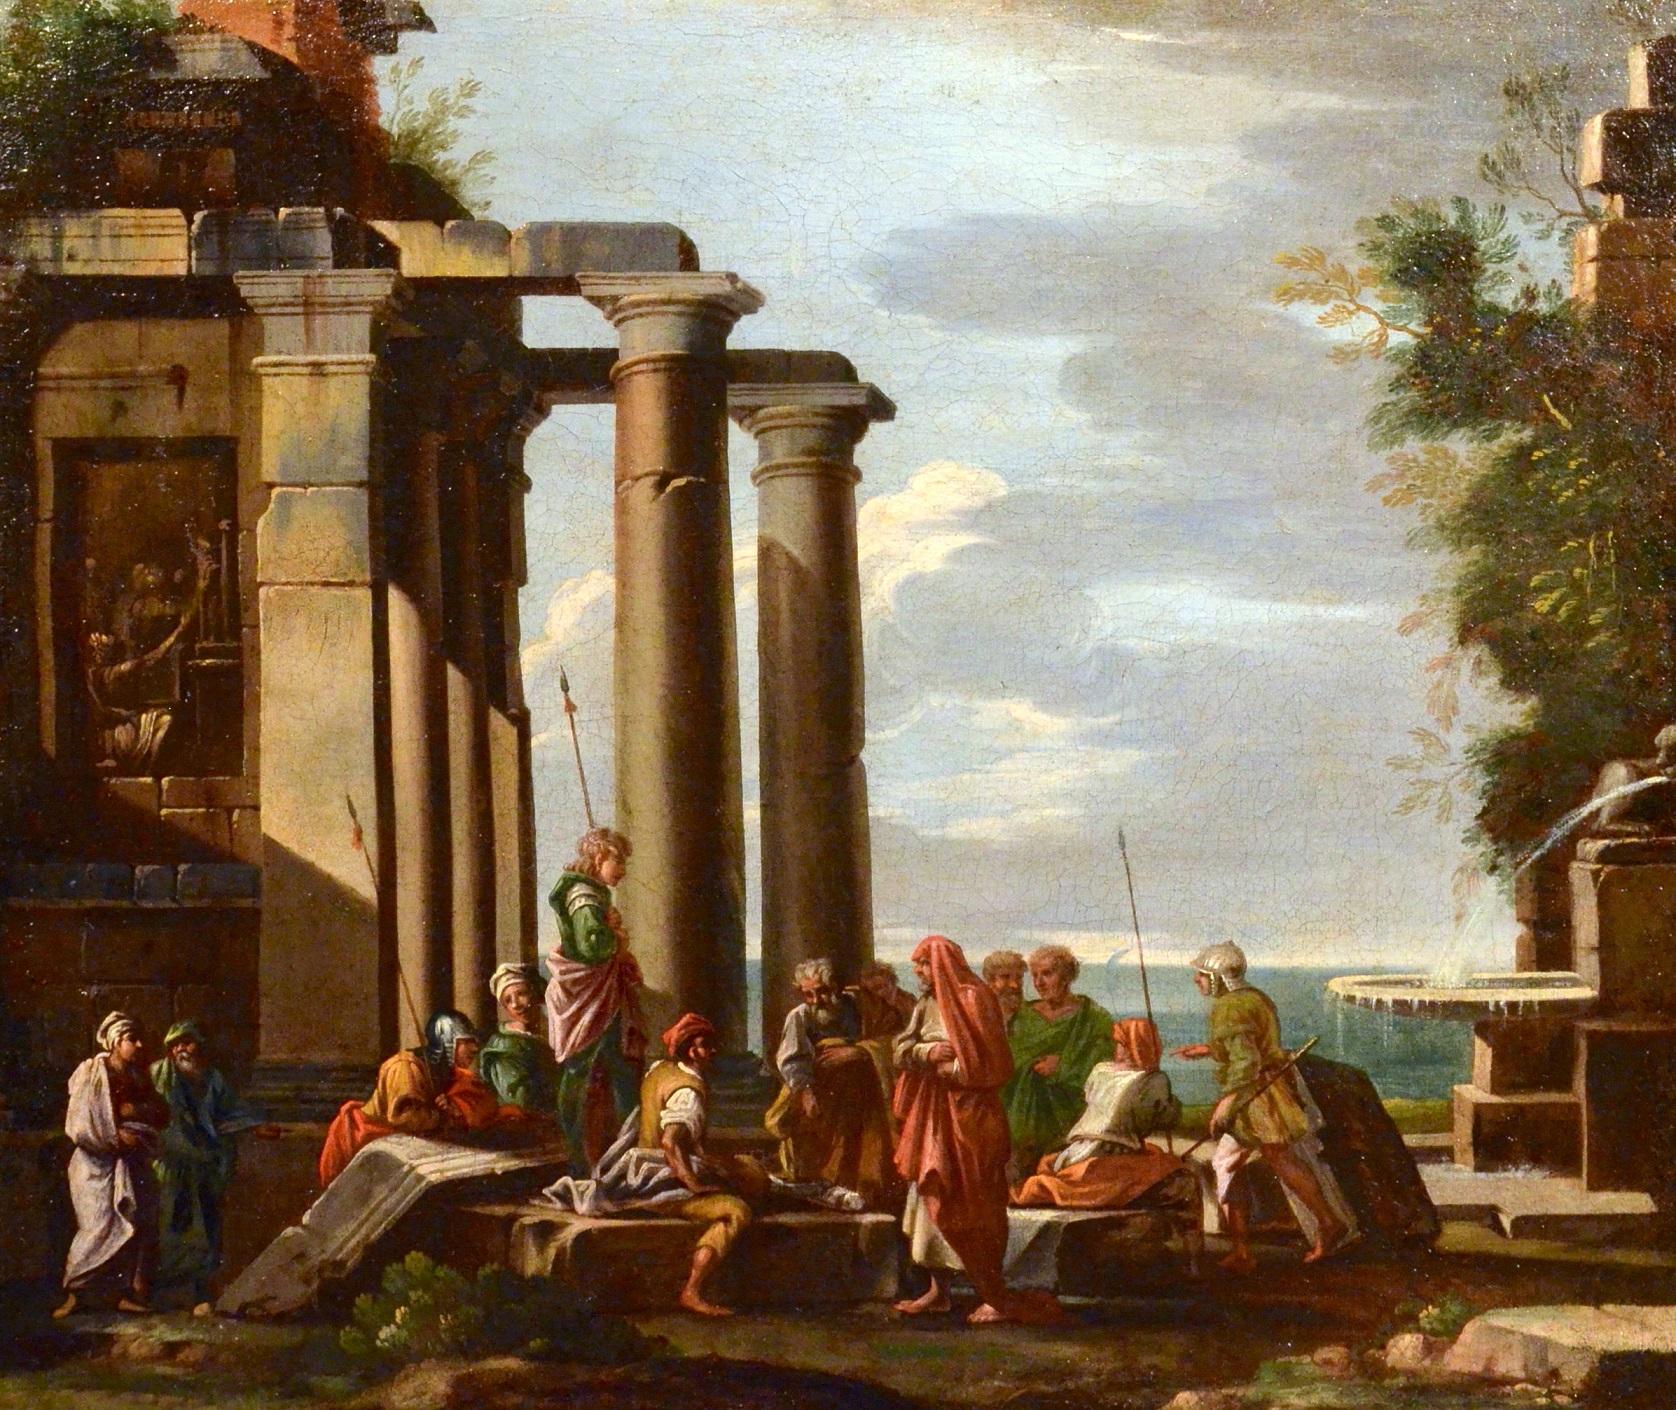 Landscape Painting Giovanni Ghisolfi (Milan 1623 - 1683) - Peinture à l'huile sur toile Ghisolfi - Art architectural Capriccio du 17ème siècle de l'ancien maître